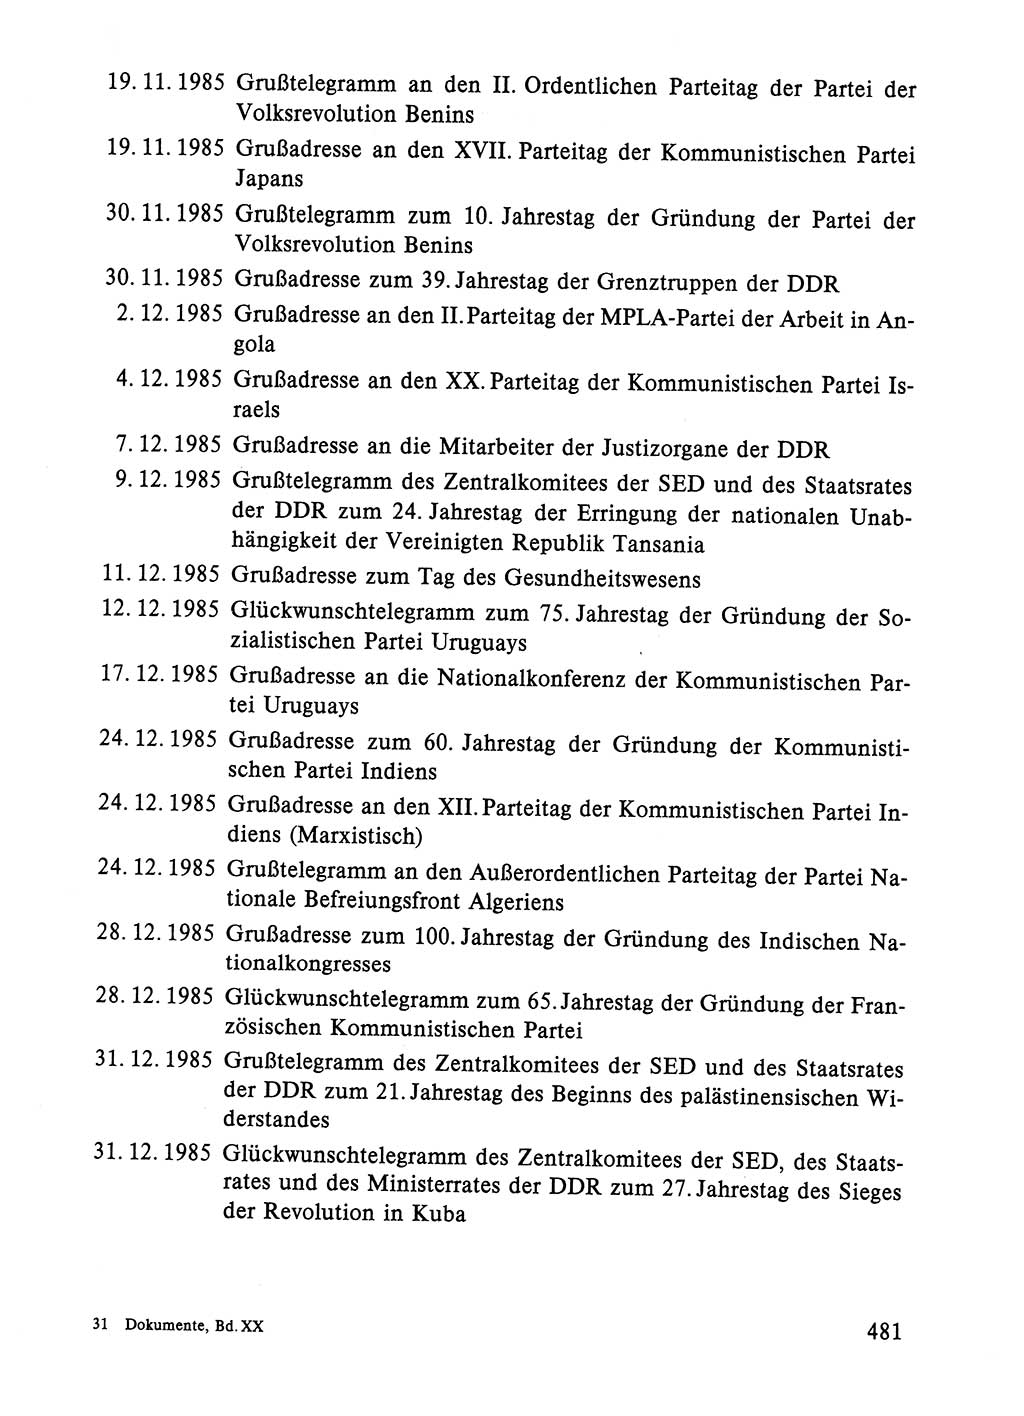 Dokumente der Sozialistischen Einheitspartei Deutschlands (SED) [Deutsche Demokratische Republik (DDR)] 1984-1985, Seite 481 (Dok. SED DDR 1984-1985, S. 481)